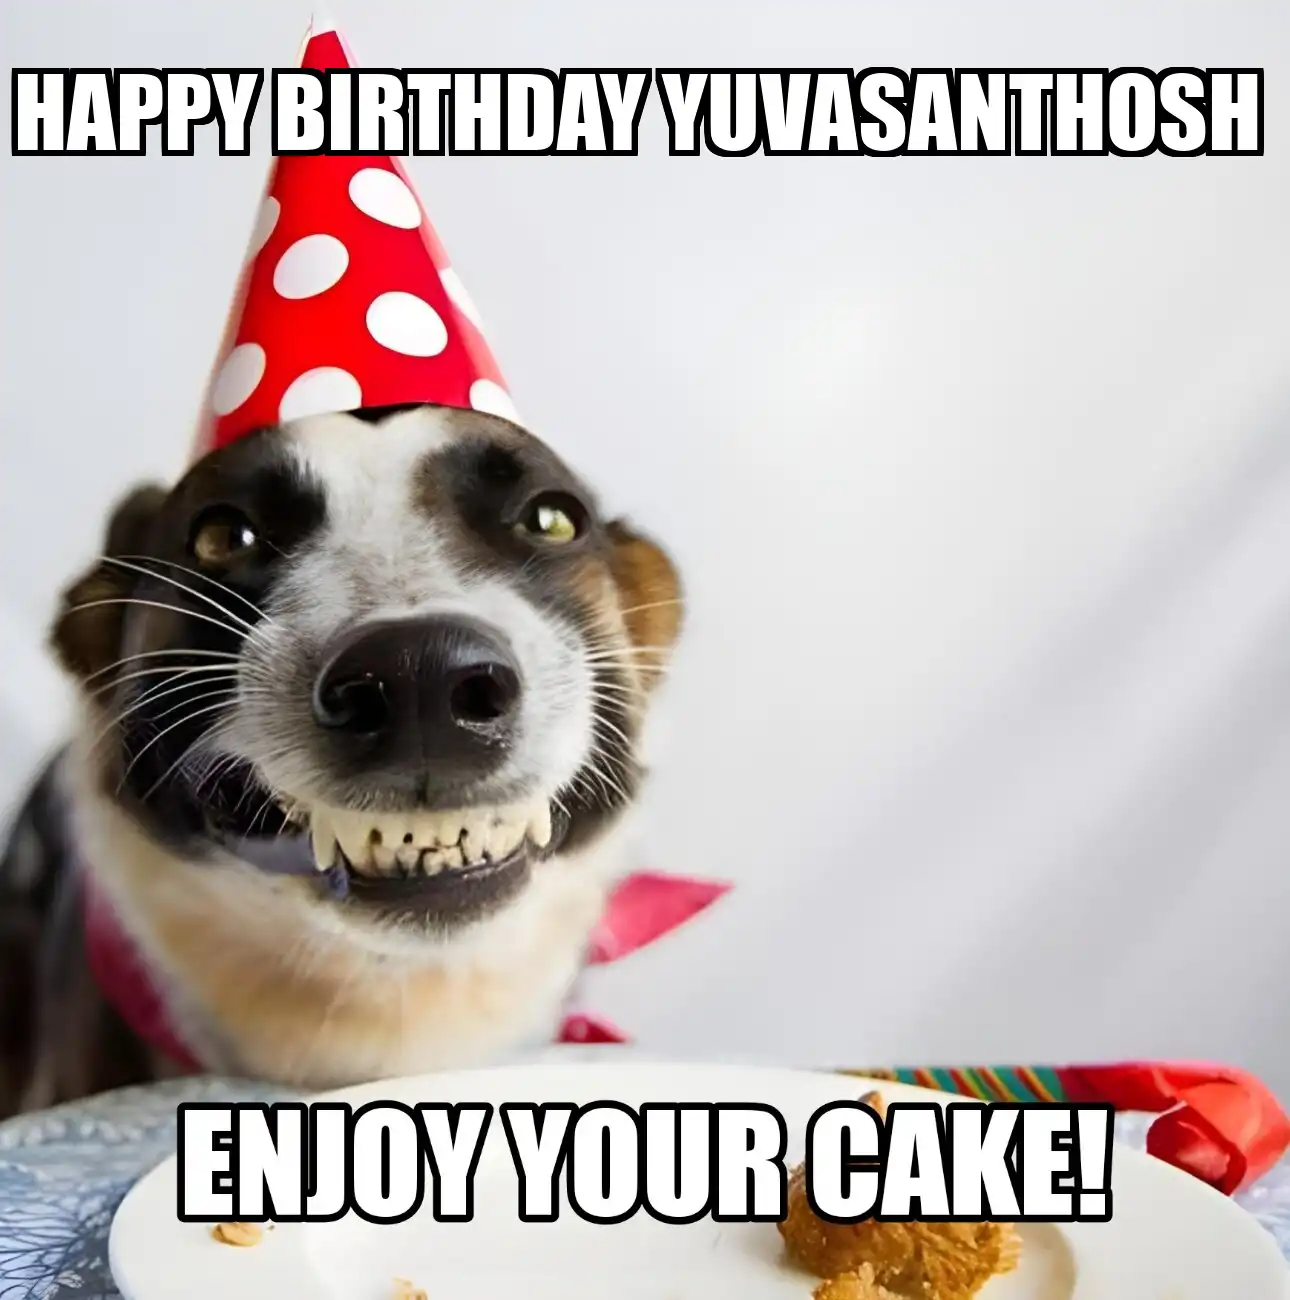 Happy Birthday Yuvasanthosh Enjoy Your Cake Dog Meme